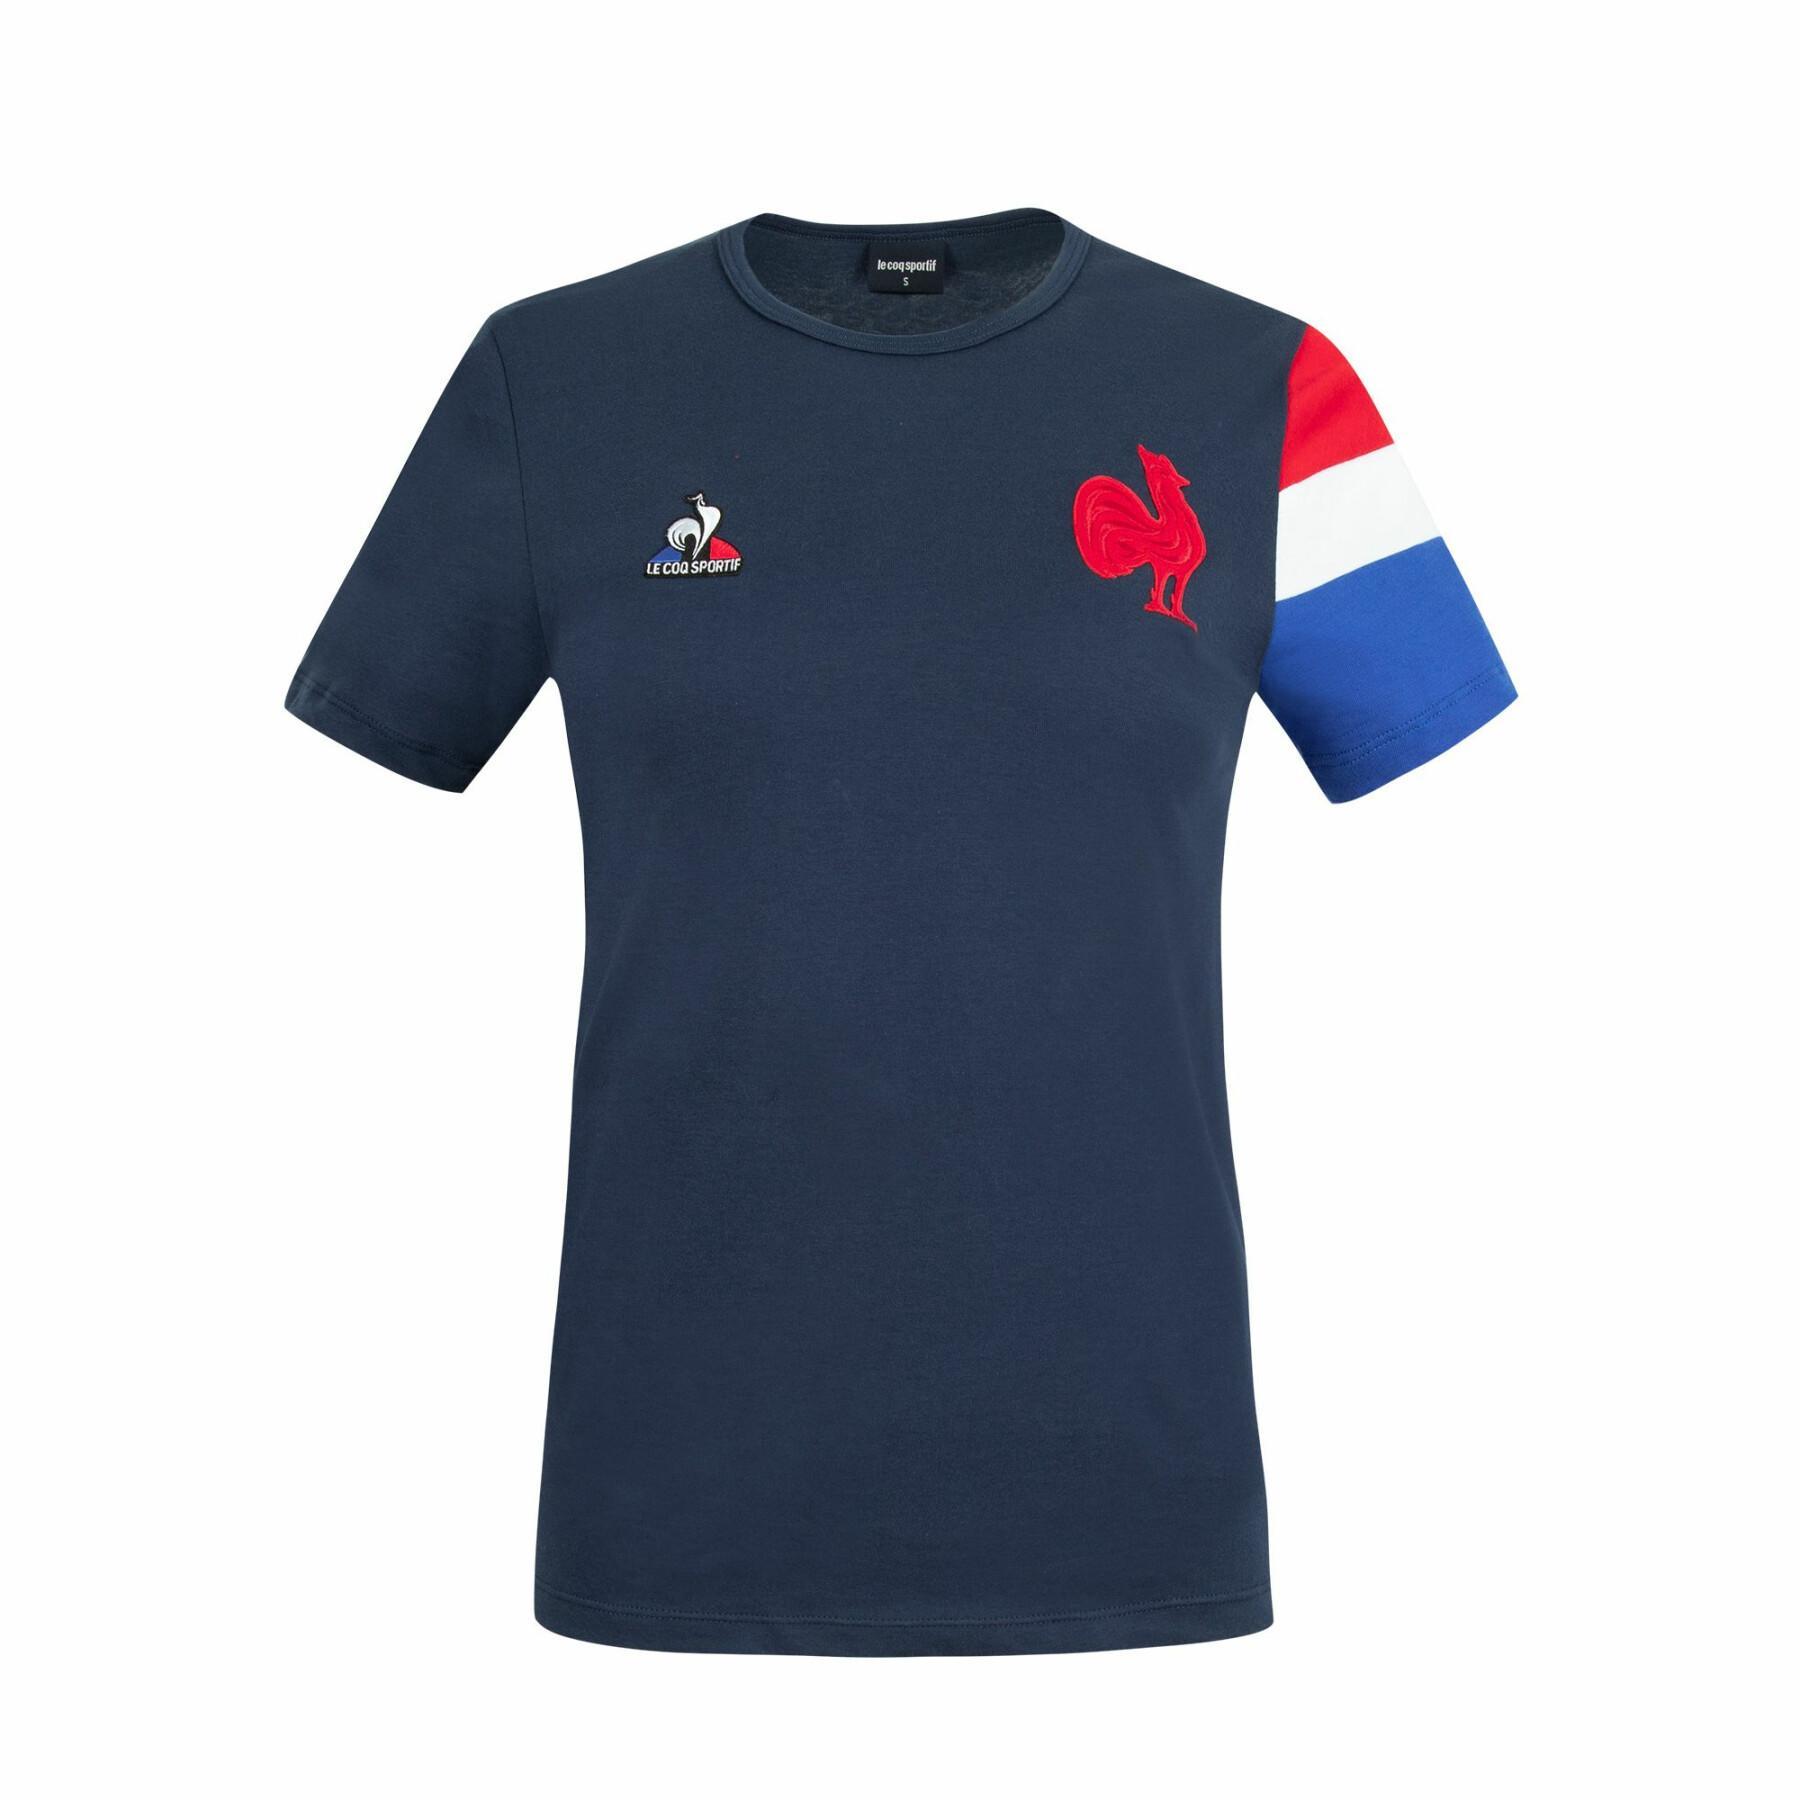 Koszulka prezentacyjna dla kobiet France 2021/22